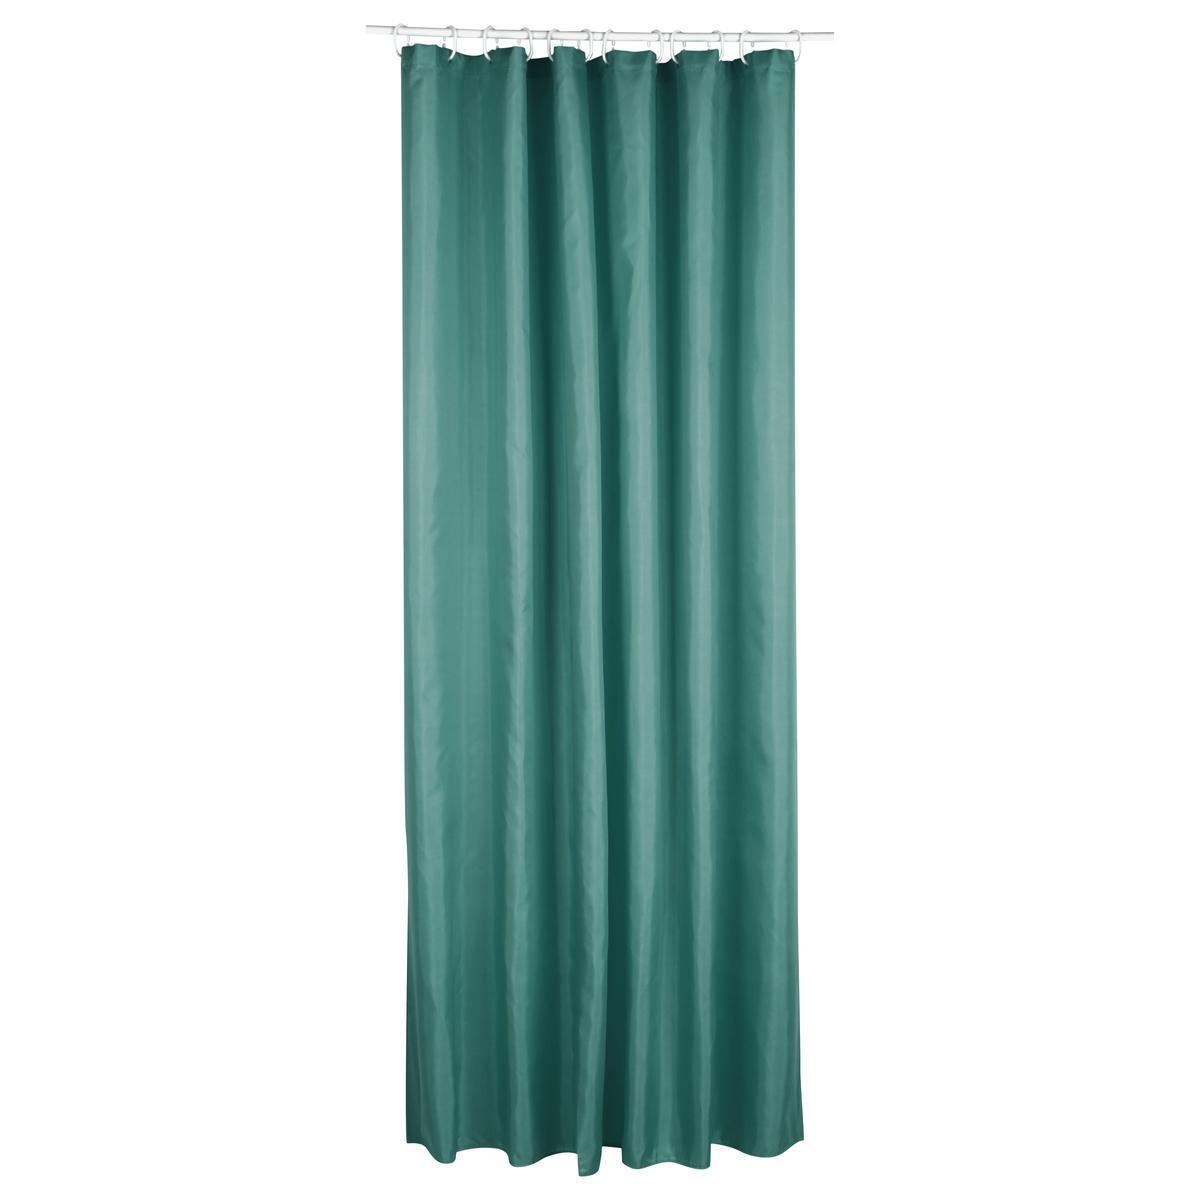 Rideau de douche classique - L 200 x l 180 cm - Différents coloris - Vert - 5FIVE